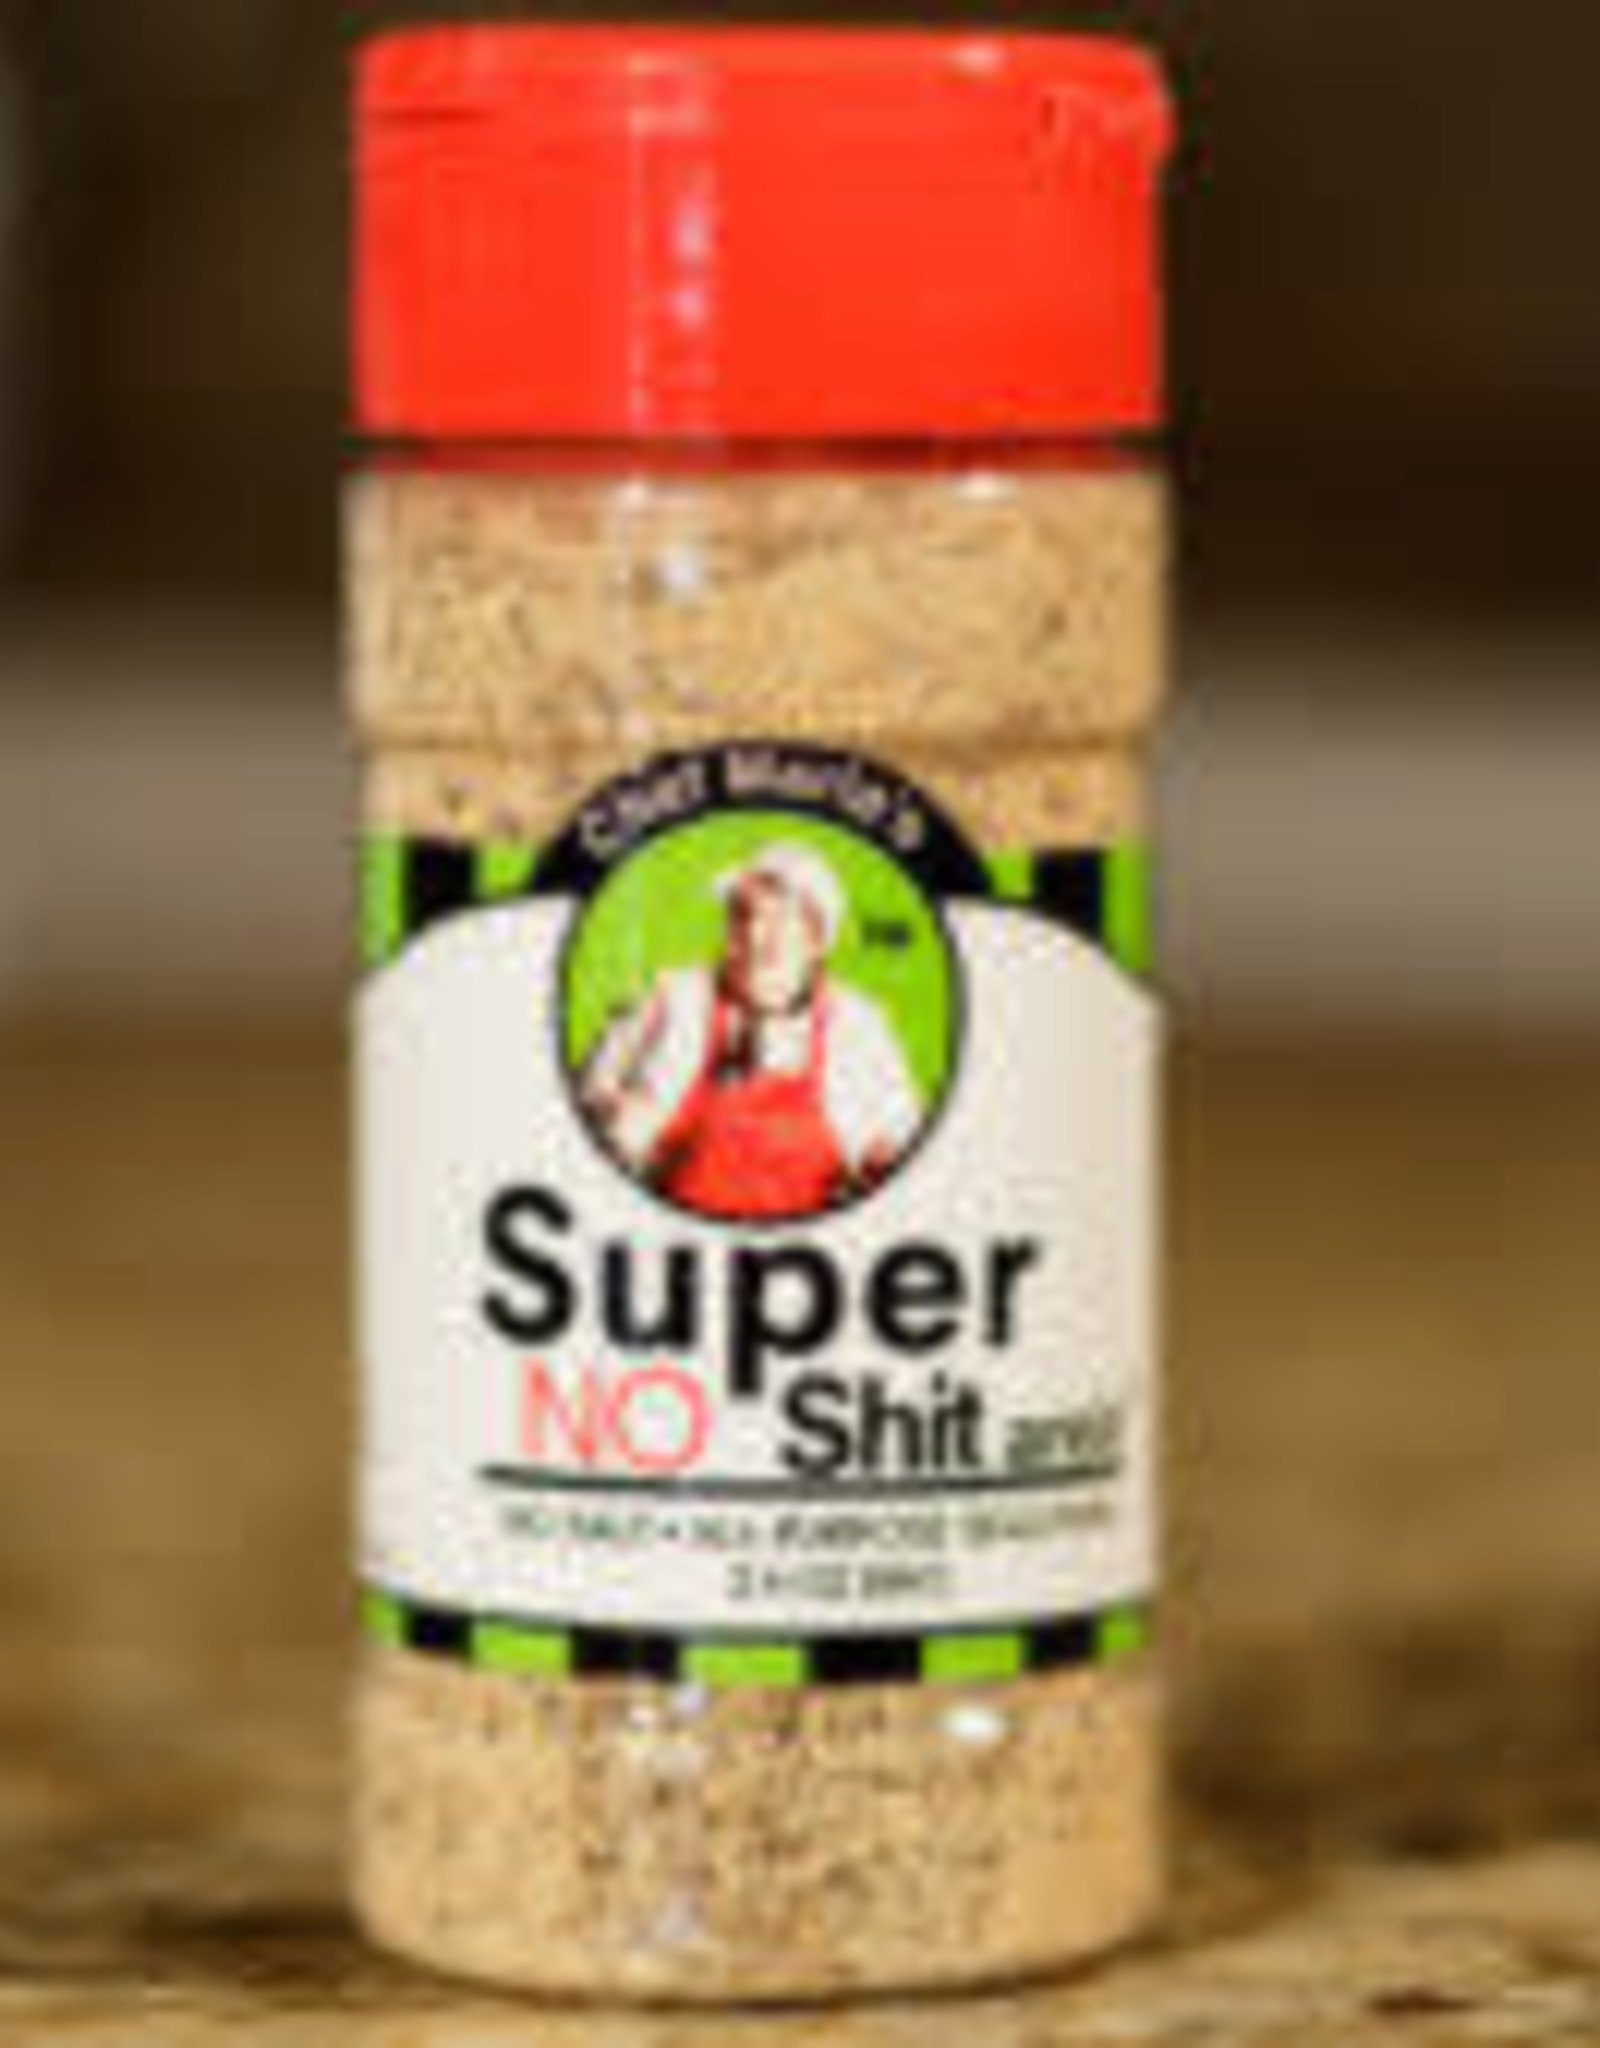 Chef Marla's Super No Shit arein